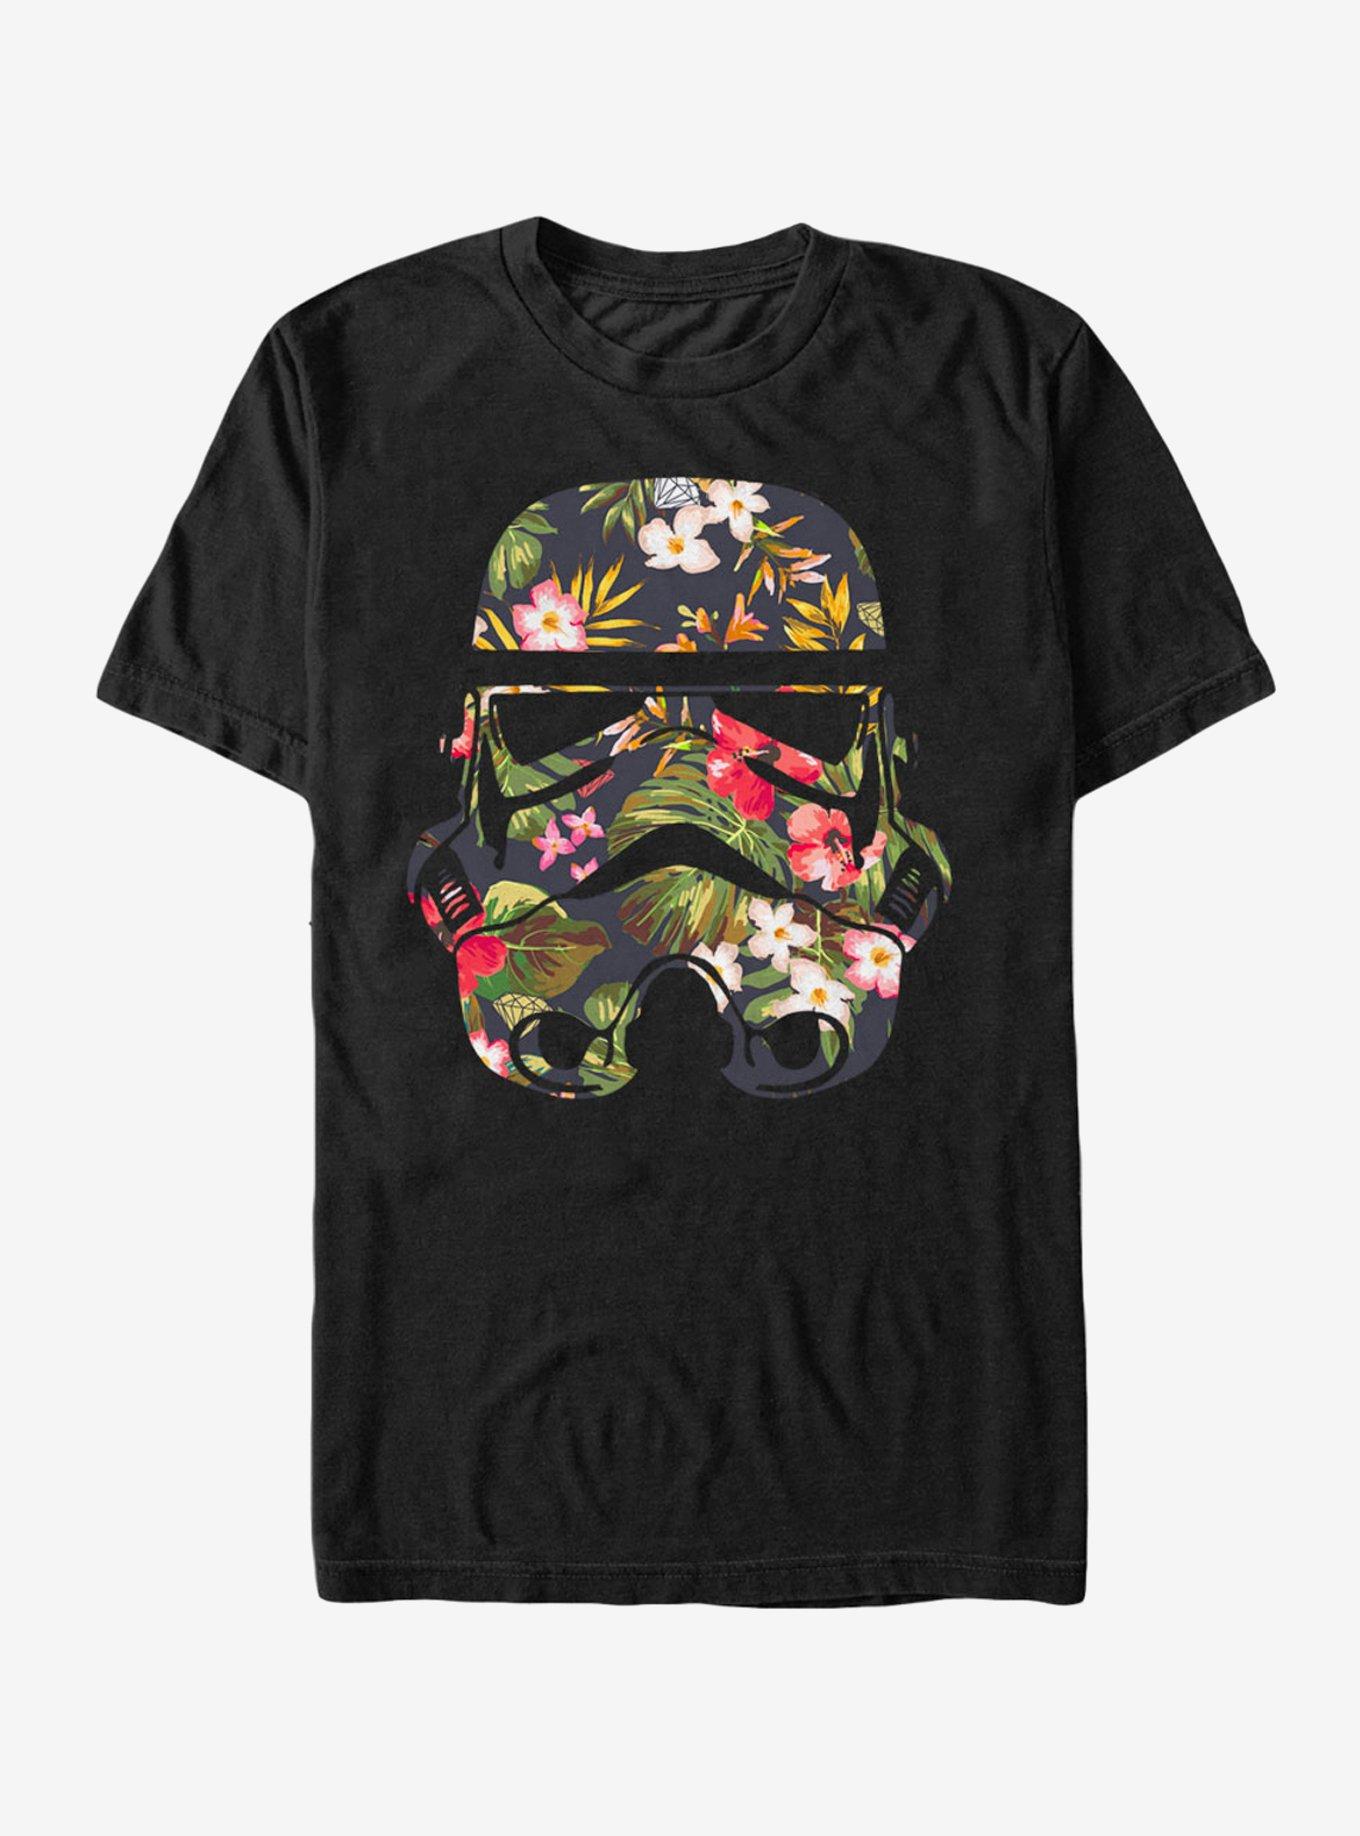 Star Wars Tropical Stormtrooper T-Shirt, BLACK, hi-res